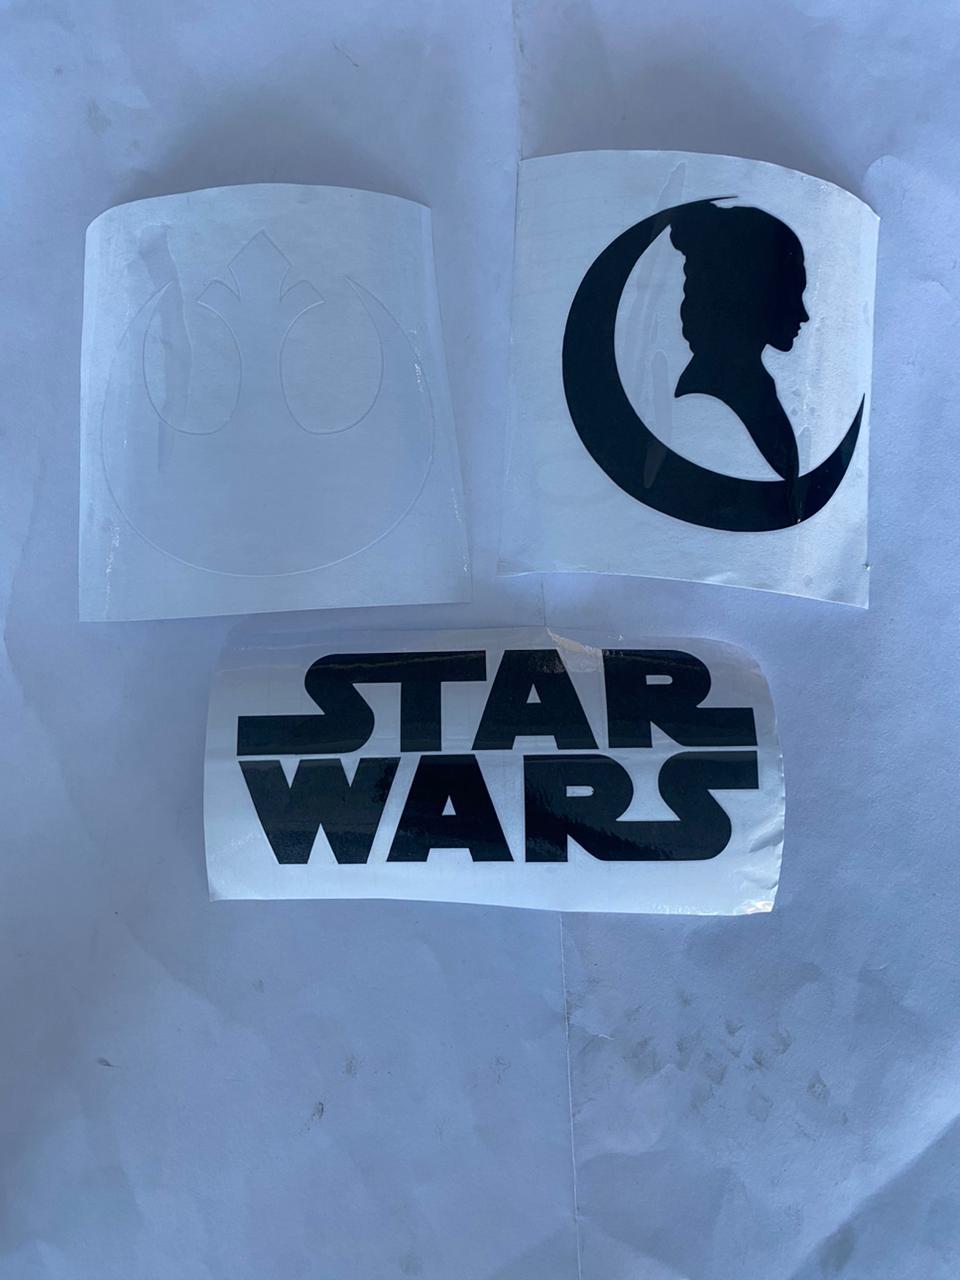 Sticker Star Wars